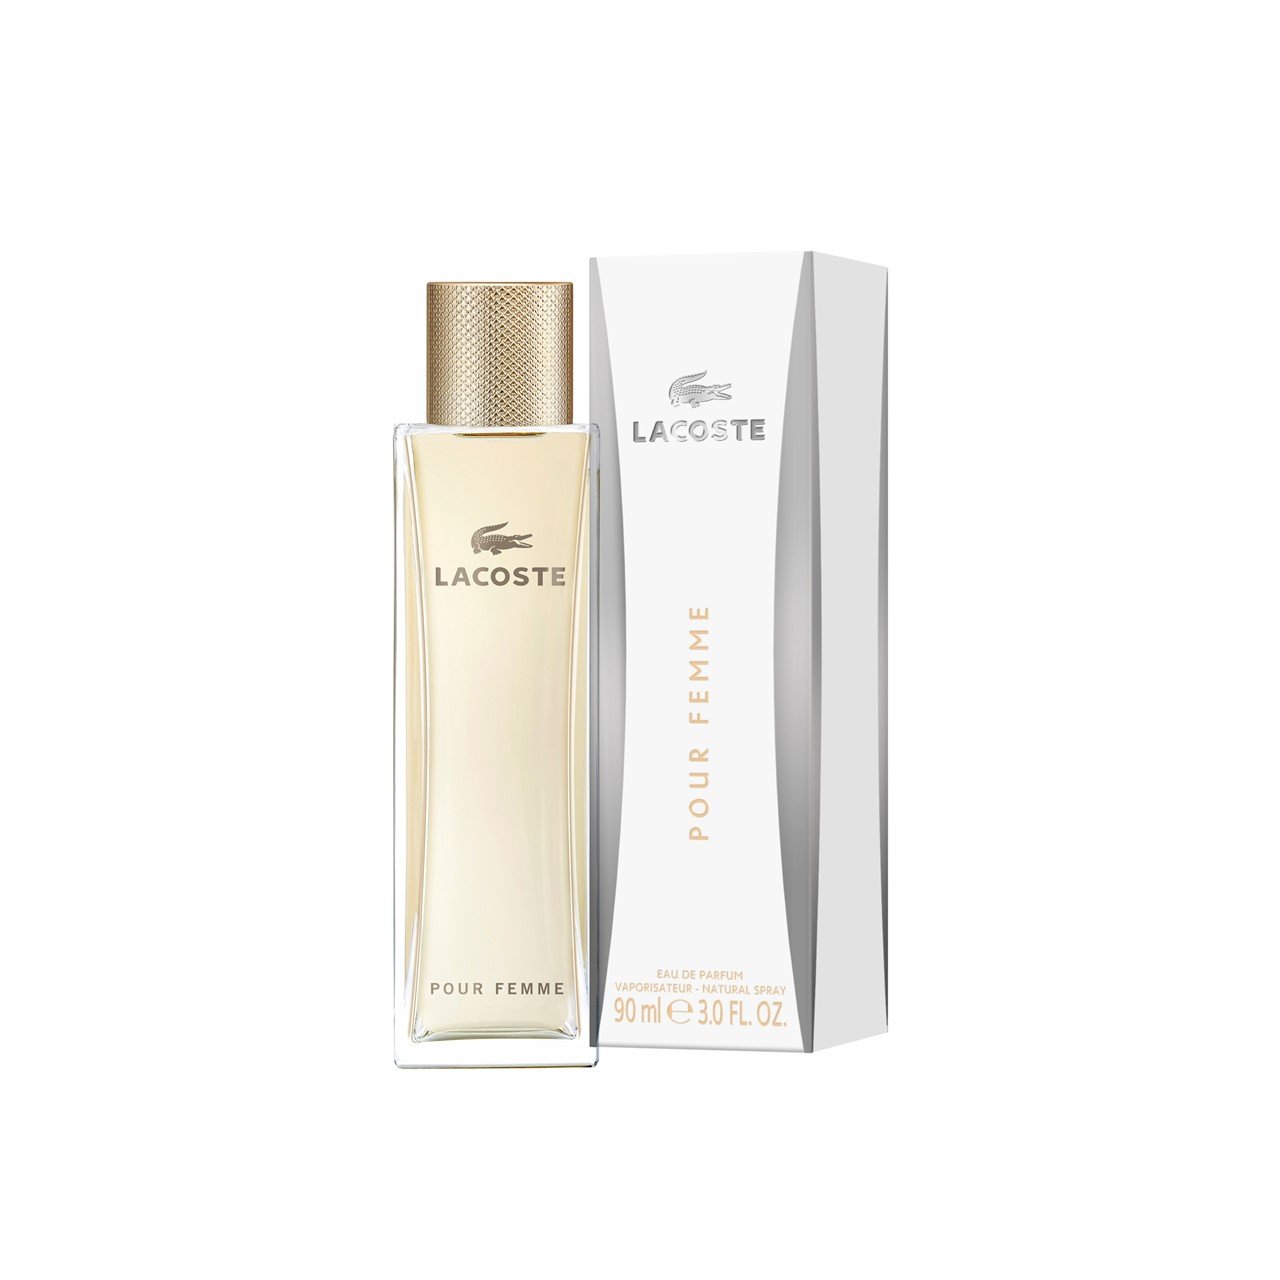 Lacoste Pour Femme Eau de Parfum 90ml (3.0fl oz)